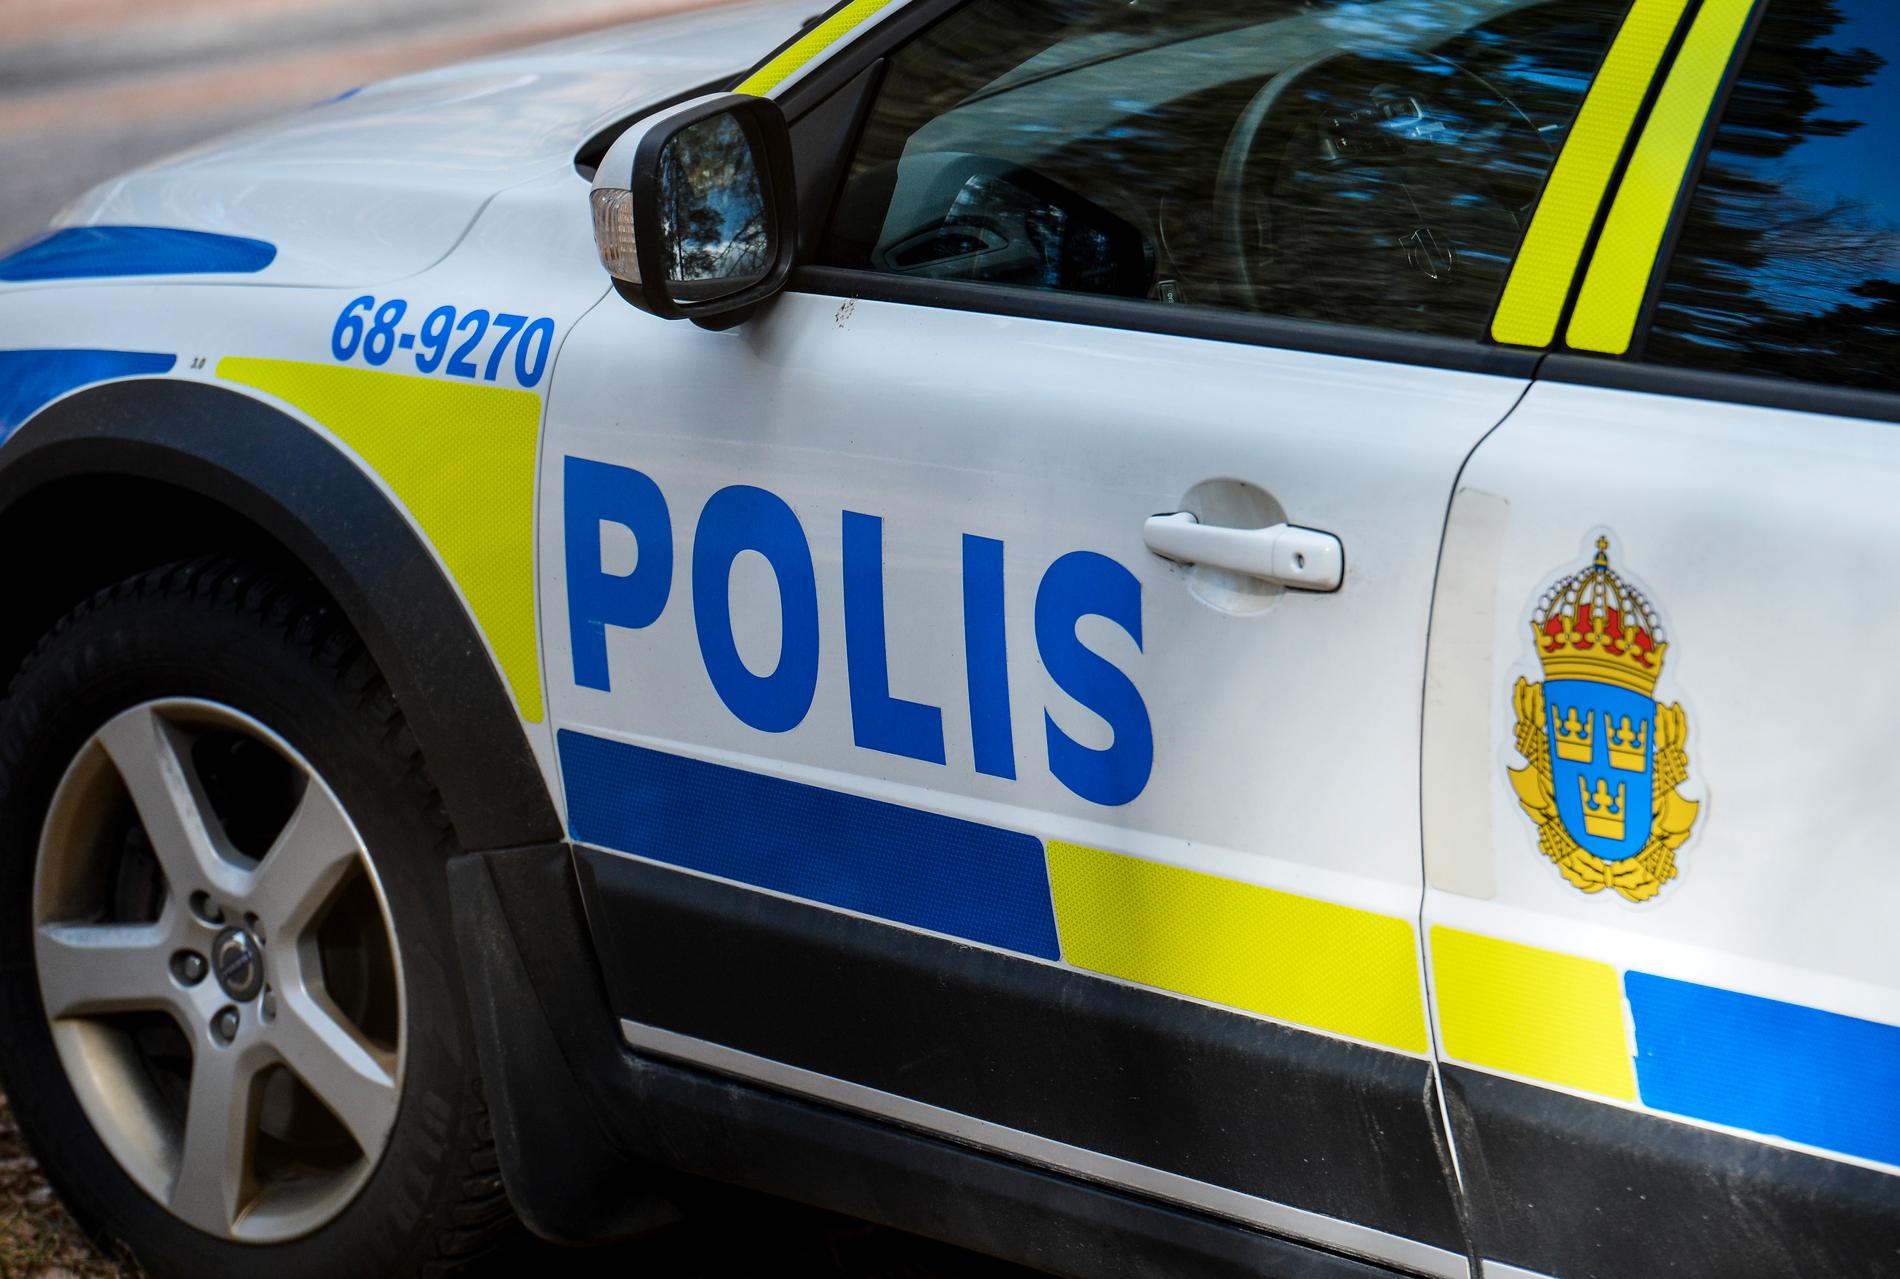 Fyra personer har anhållits efter ett vapenbeslag i Upplands Väsby. Arkivbild.